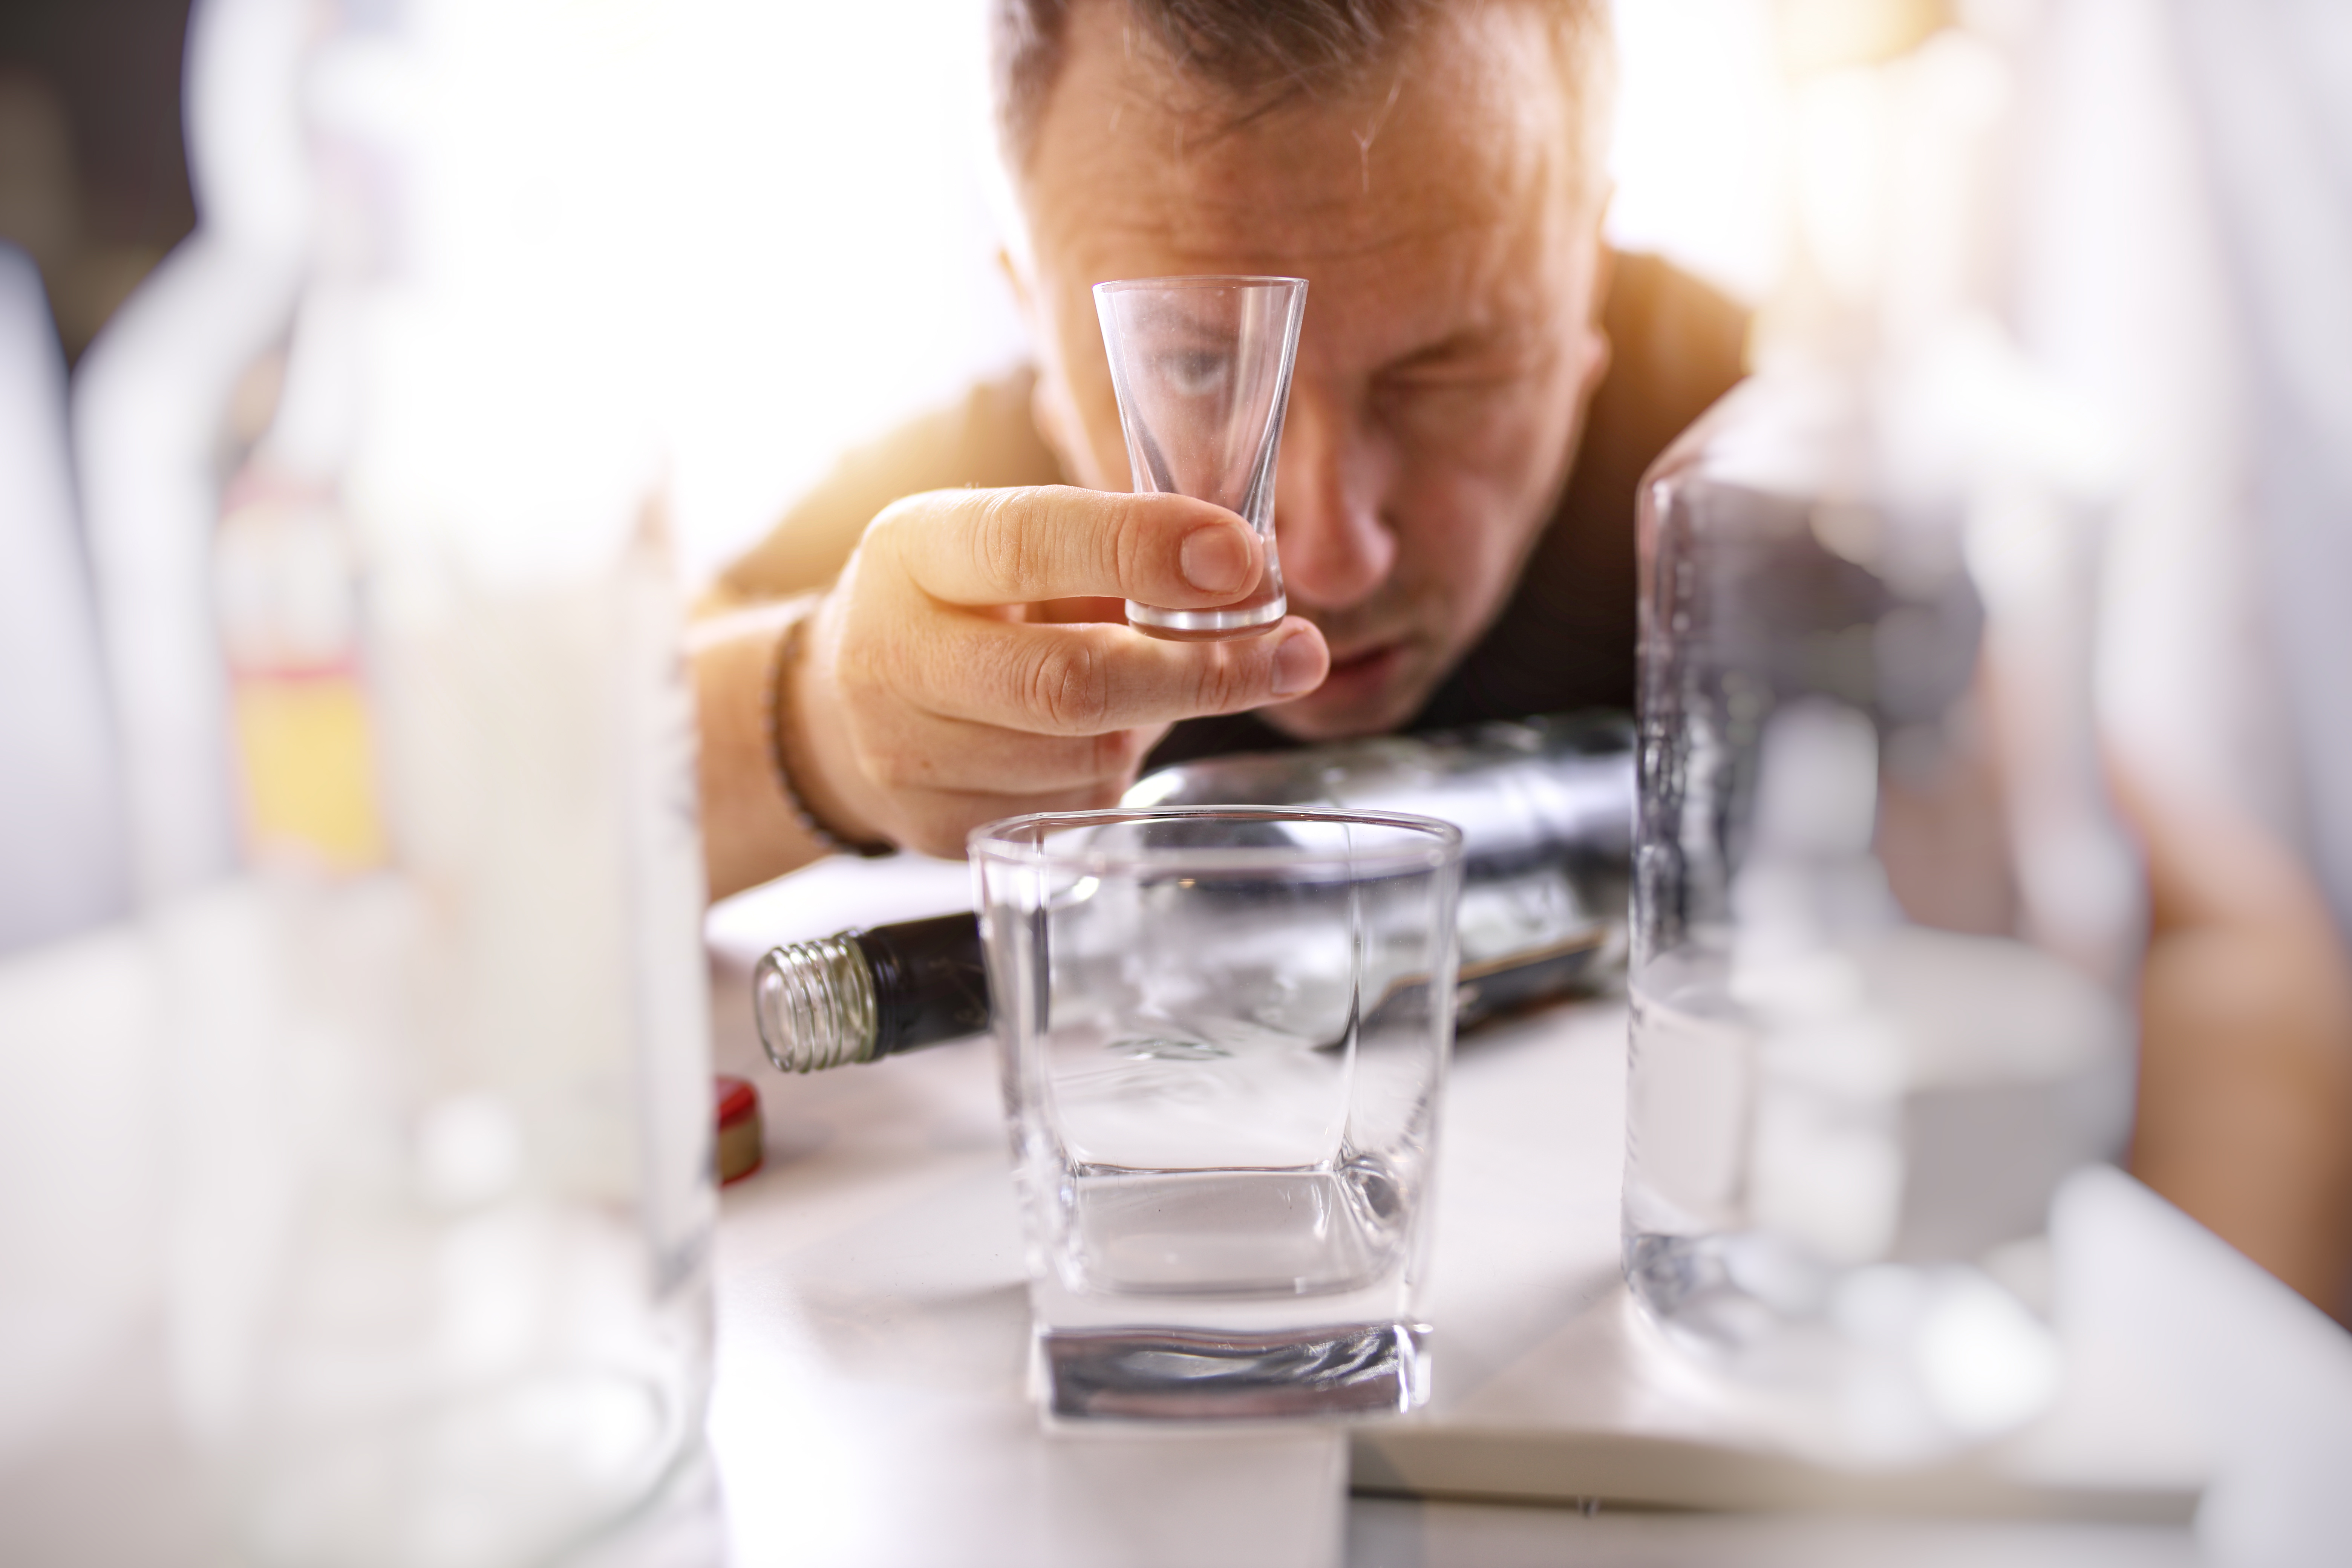 Les buveurs moyens modérés avec un schéma de binge drinking occasionnel, sont 5 fois plus susceptibles de développer des troubles de la consommation d’alcool (Visuel Adobe Stock 422027036)